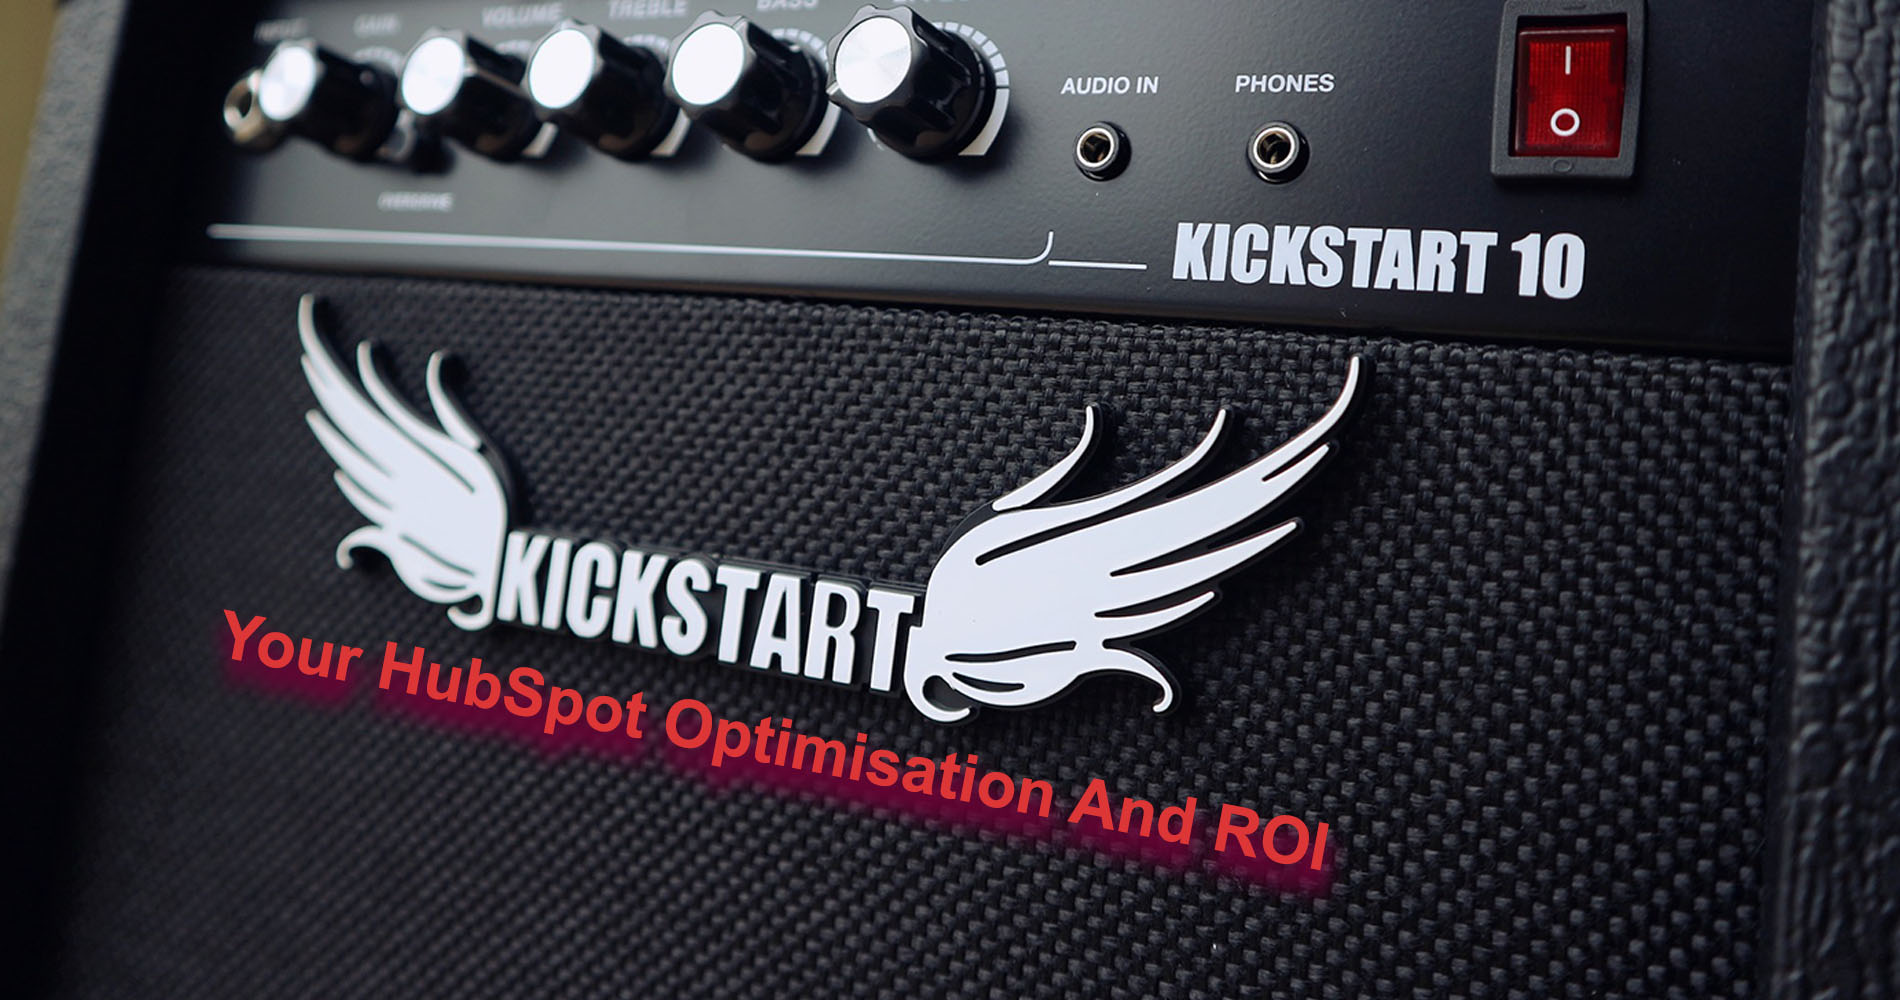 Kickstart Your HubSpot Optimisation And ROI